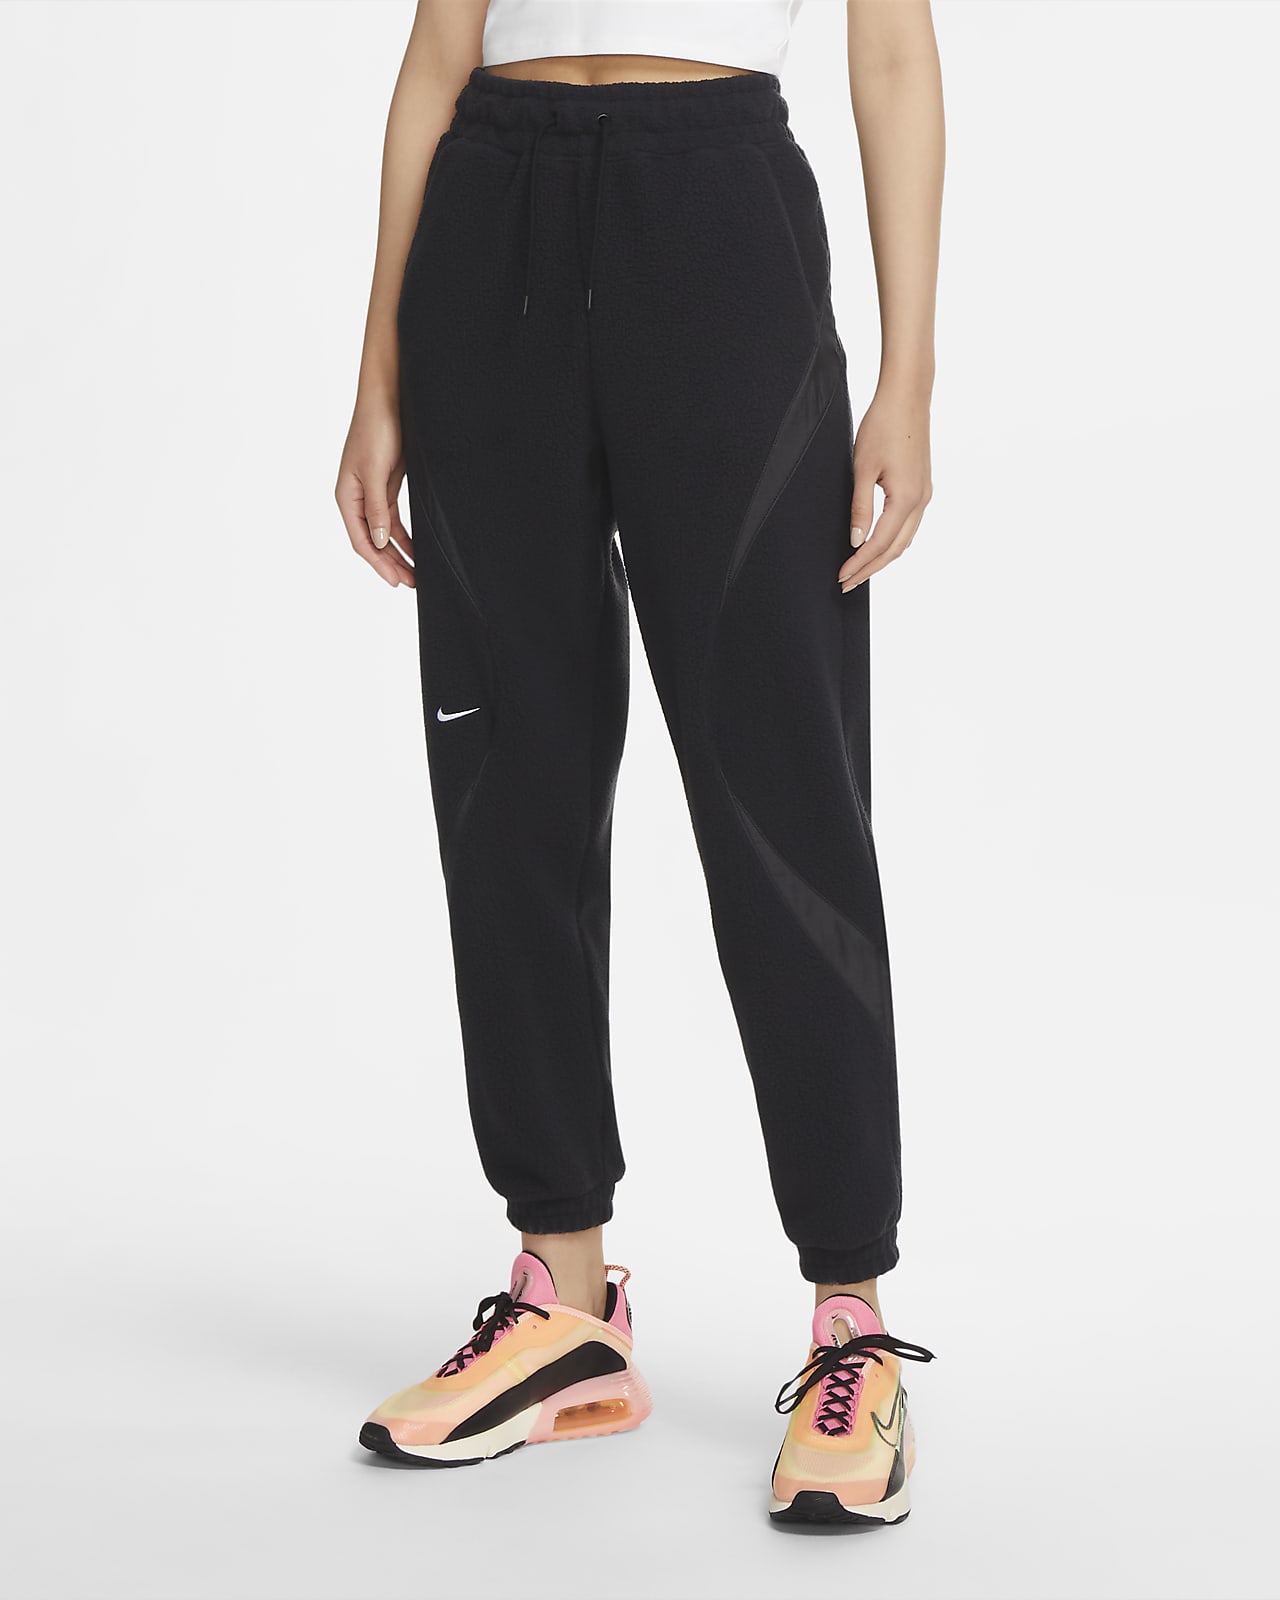 Nike Sportswear Women's Pants. Nike.com